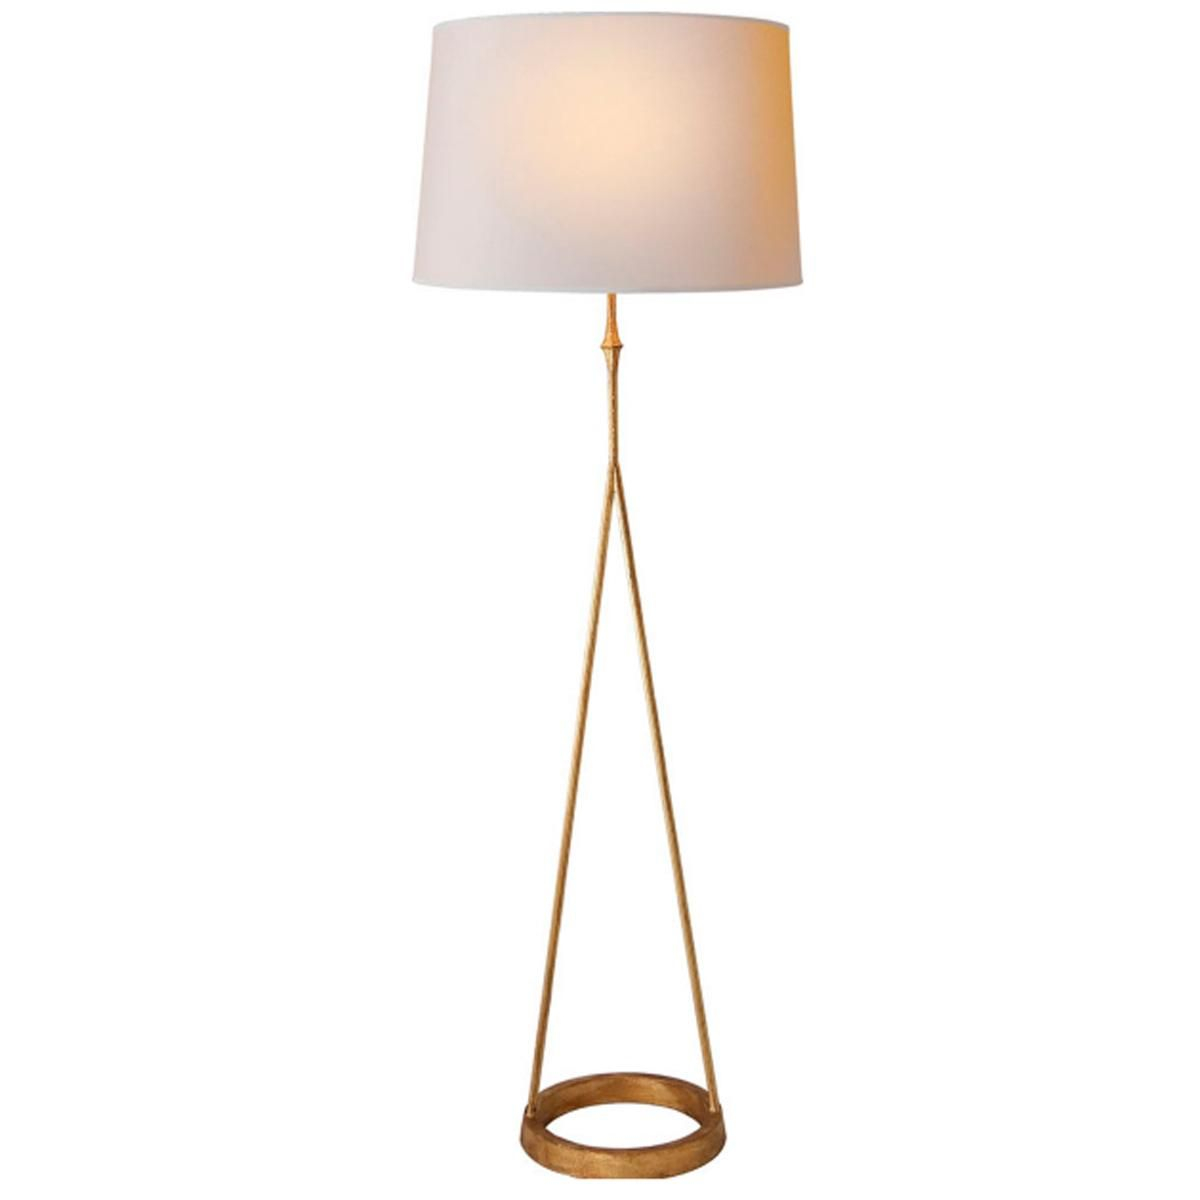 A Line Floor Lamp Decorative Floor Lamps Floor Lamp regarding size 1200 X 1200